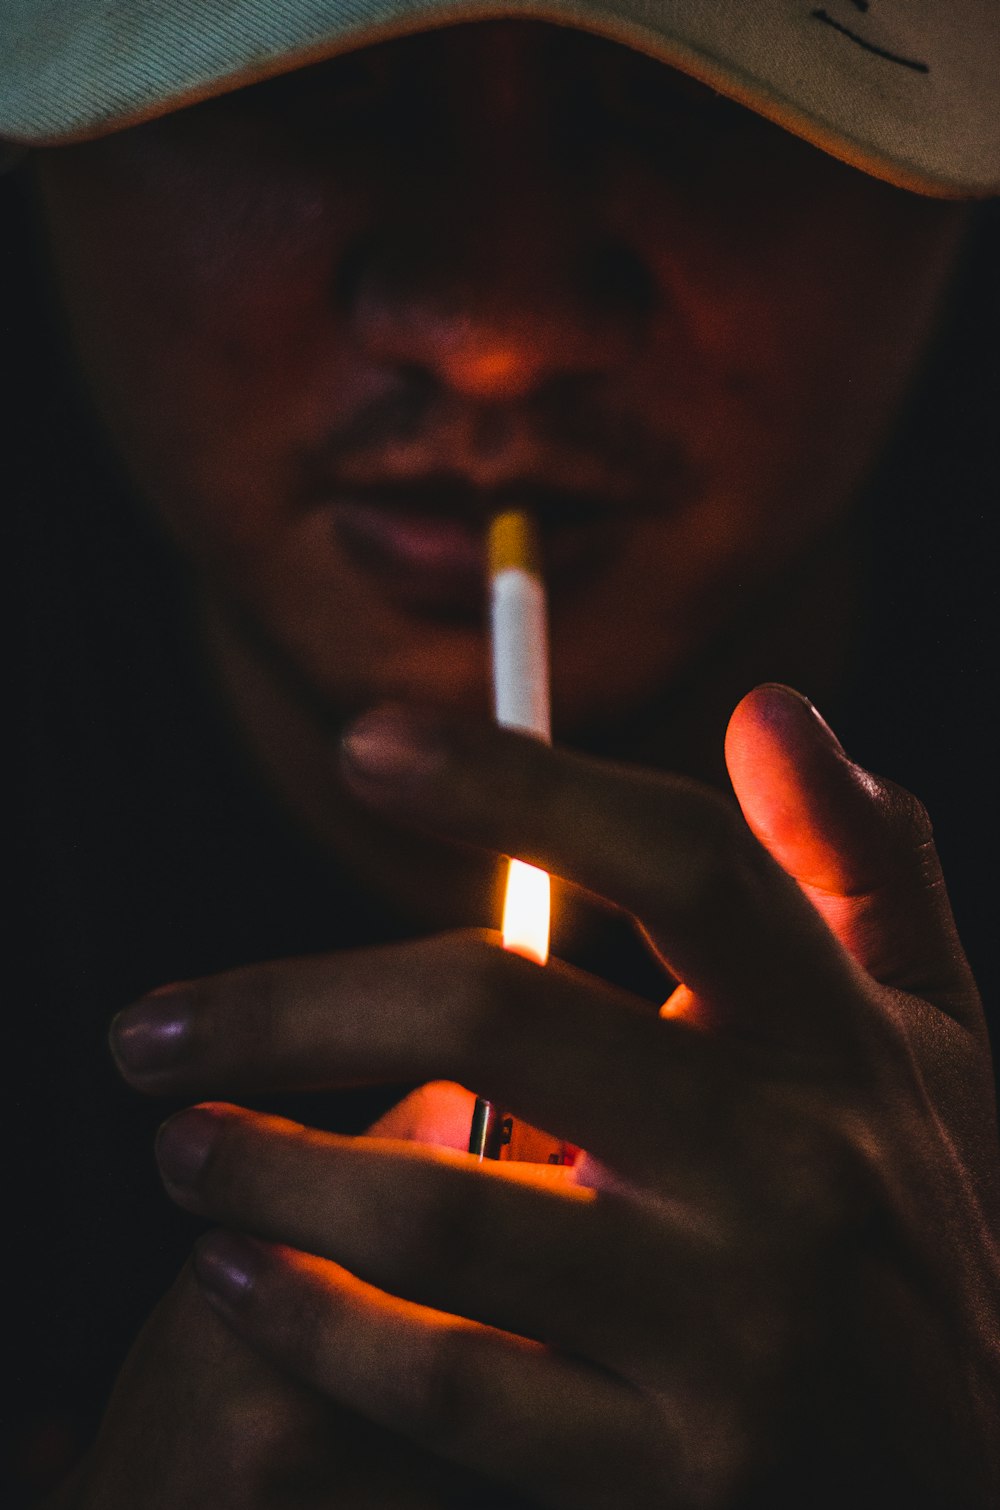 Ein Mann mit einer brennenden Zigarette in der Hand